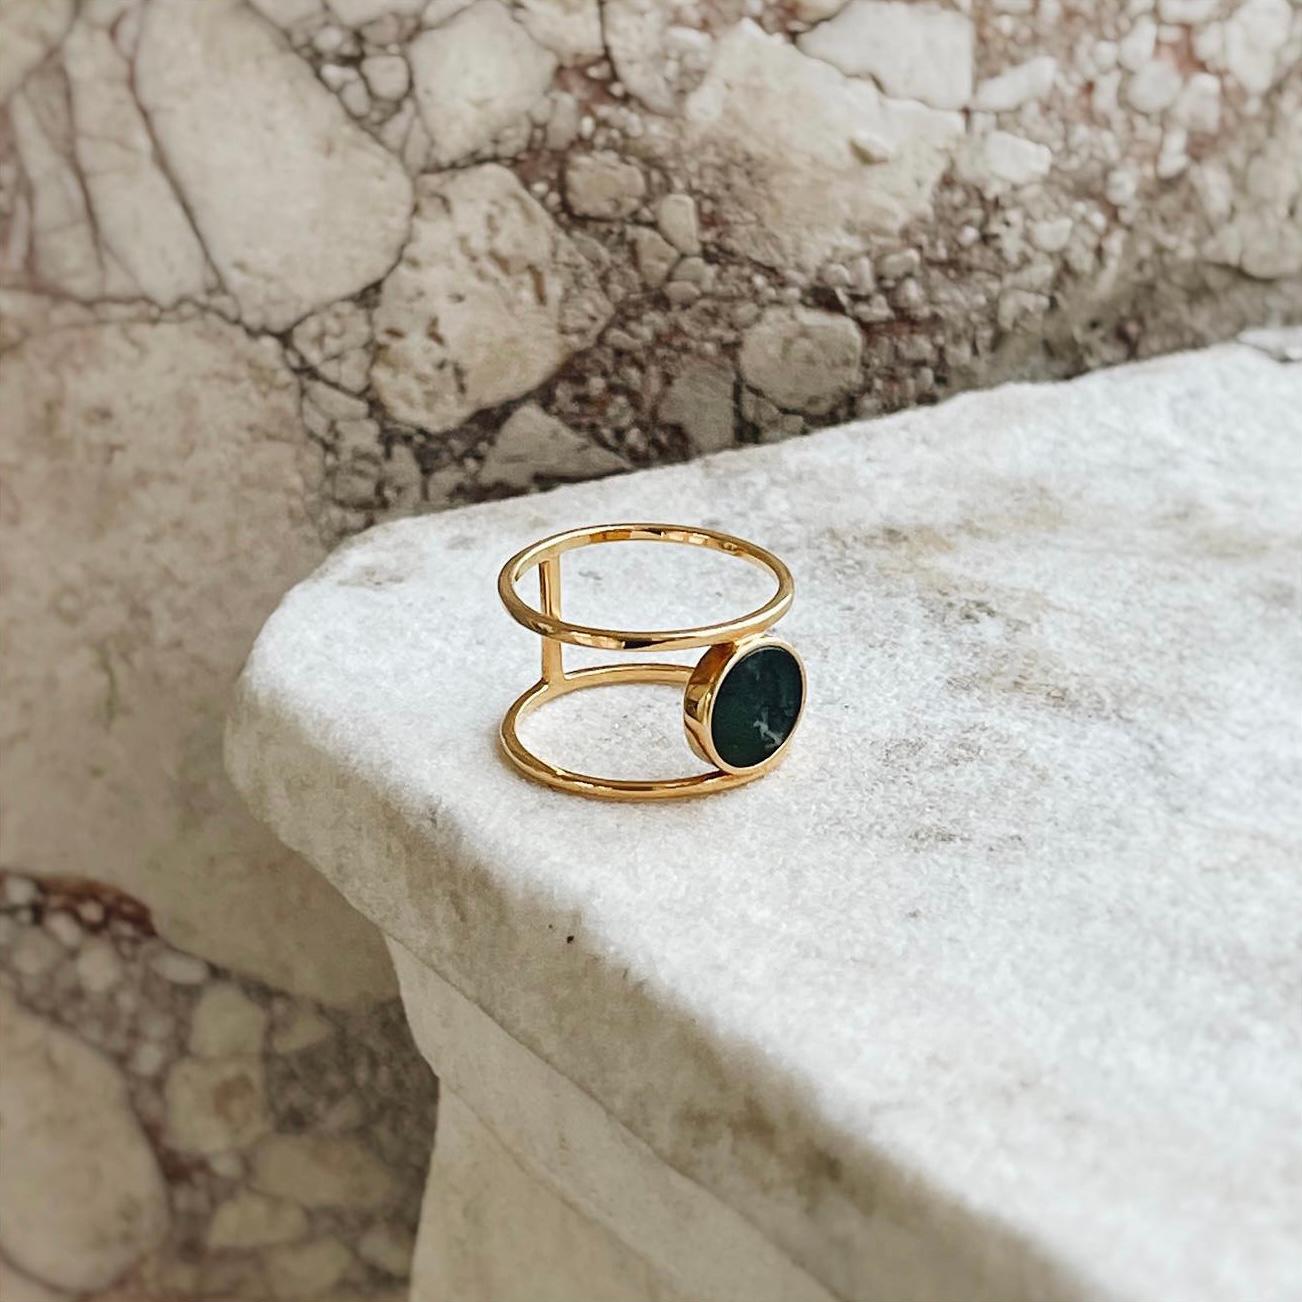 Entdecken Sie unseren fesselnden Bestseller-Ring mit einem atemberaubenden grünen Stein, der Ihr Herz erobern wird. Sein einzigartiges Design mit den doppelten Ringen verbindet mühelos Schlichtheit und Modernität und ermöglicht es Ihnen, Ihren